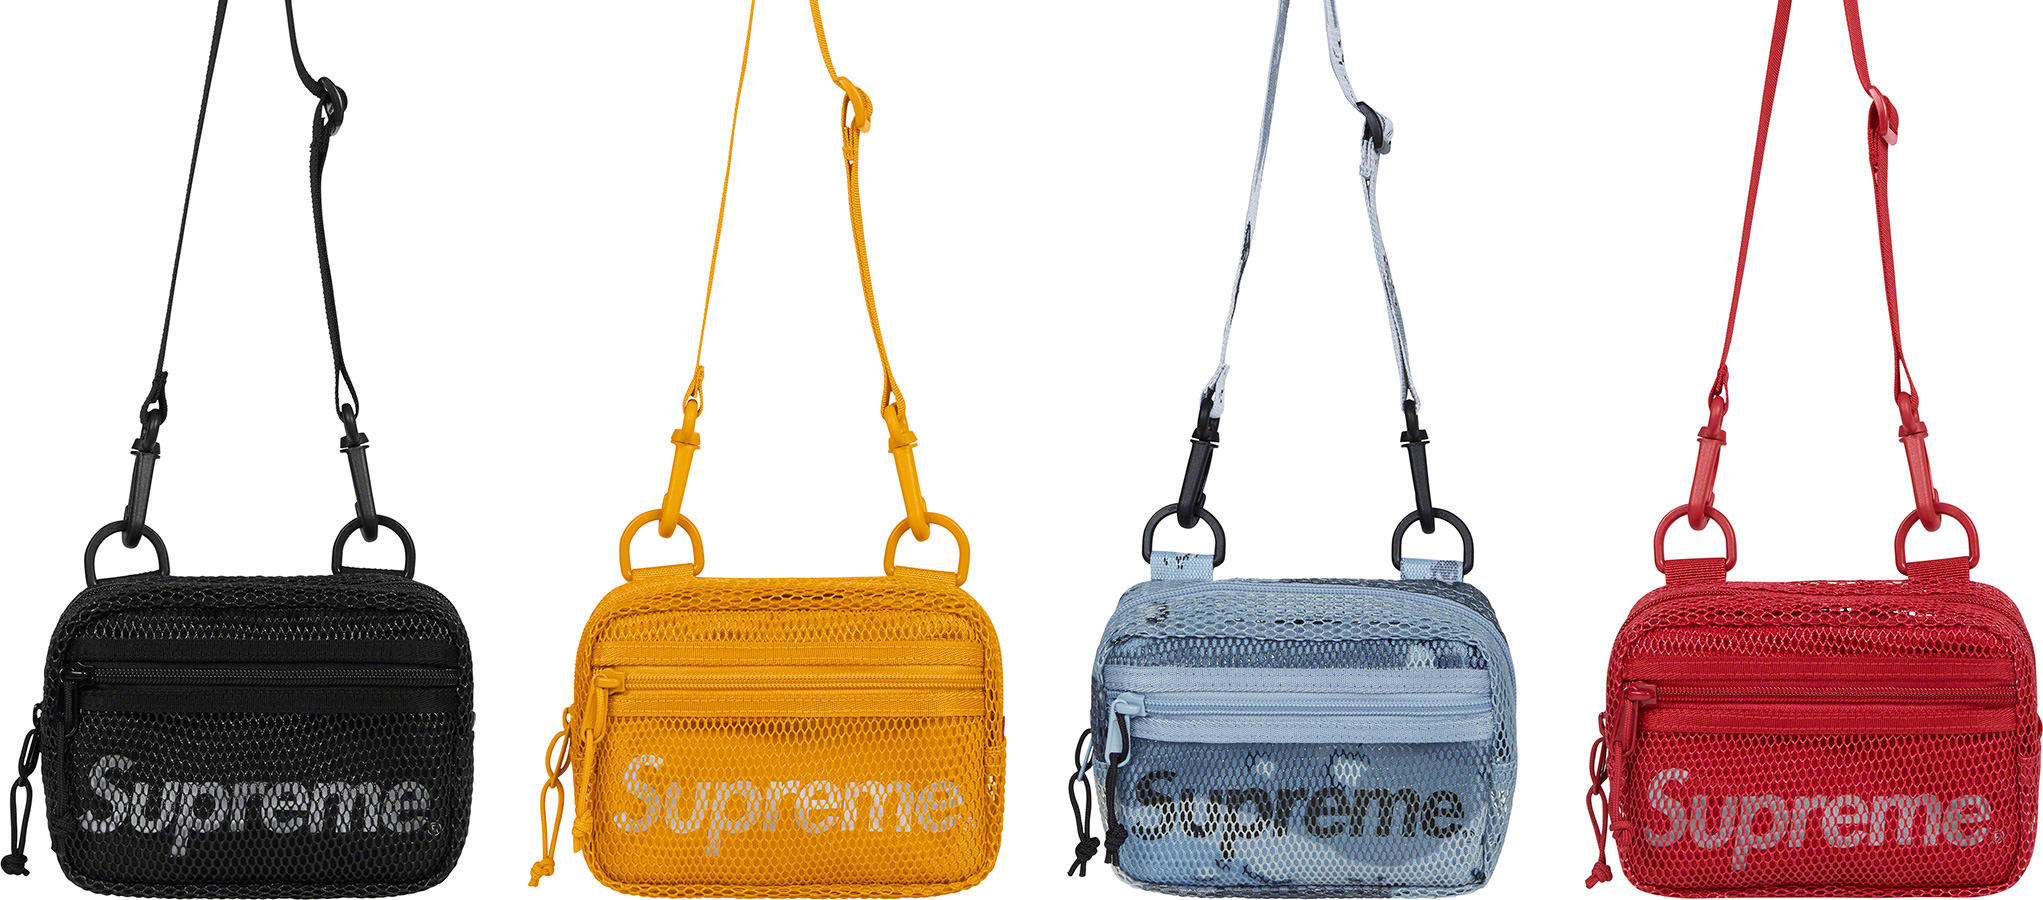 Small Shoulder Bag - spring summer 2020 - Supreme